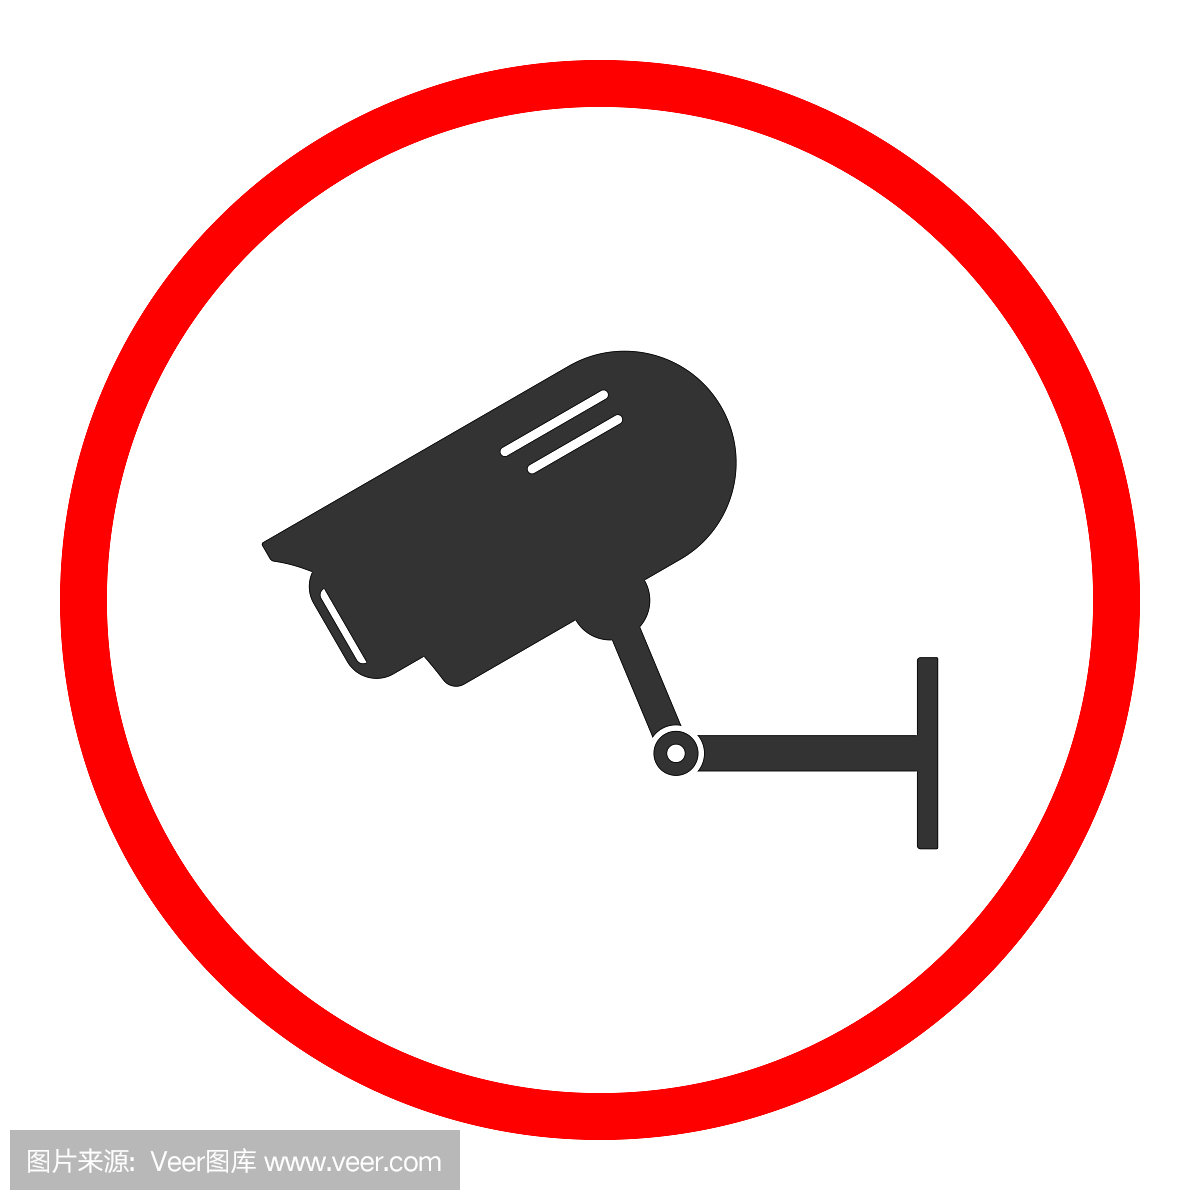 安全相机标志。在红色圆圈的闭路电视摄像机图